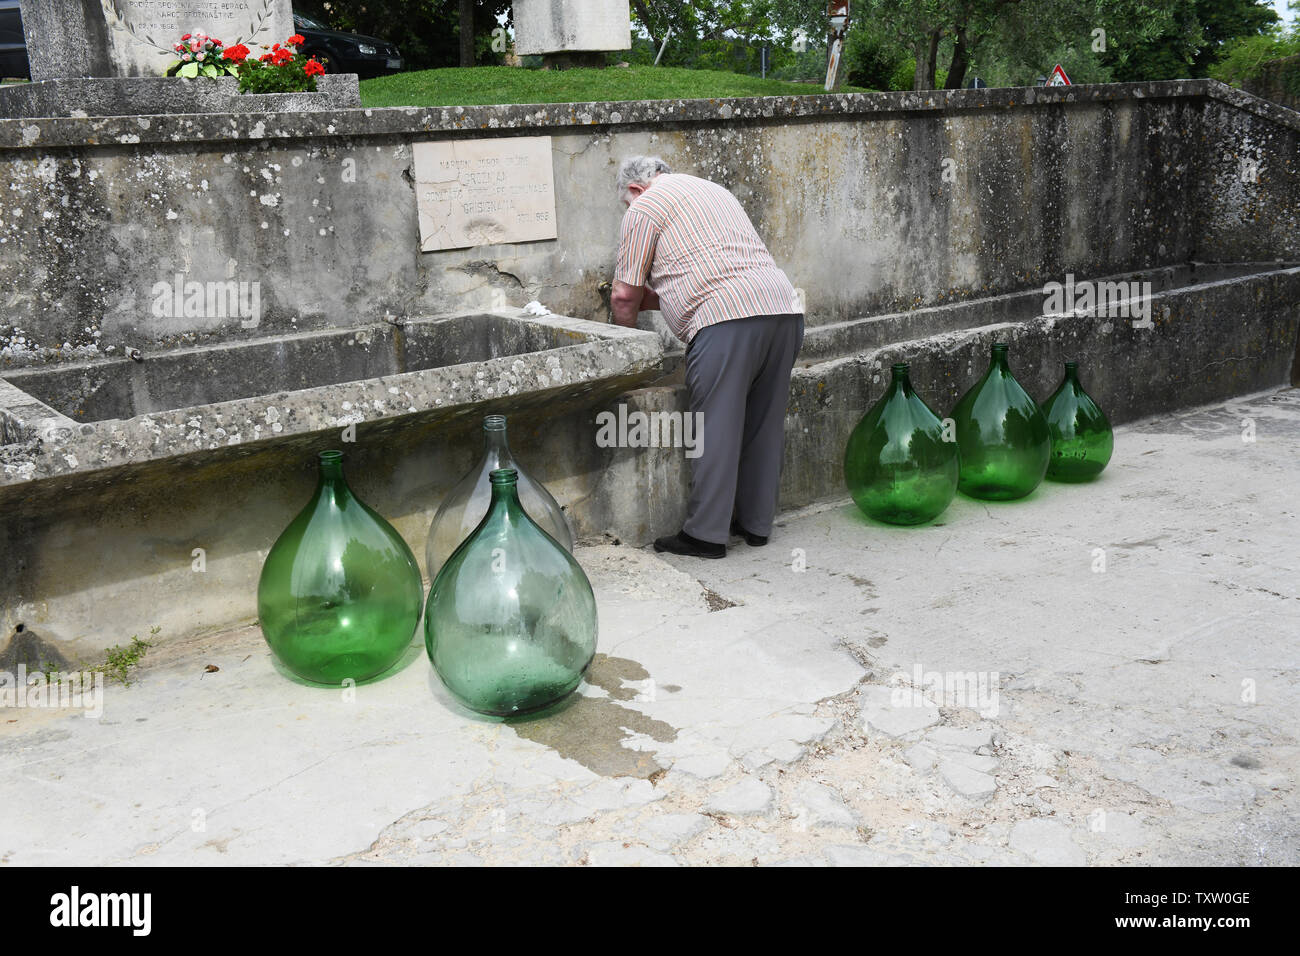 Grand nettoyage lavage des bouteilles en verre vert distillerie Groznjan le hilltop village célèbre pour ses truffes en Istrie, Croatie Banque D'Images